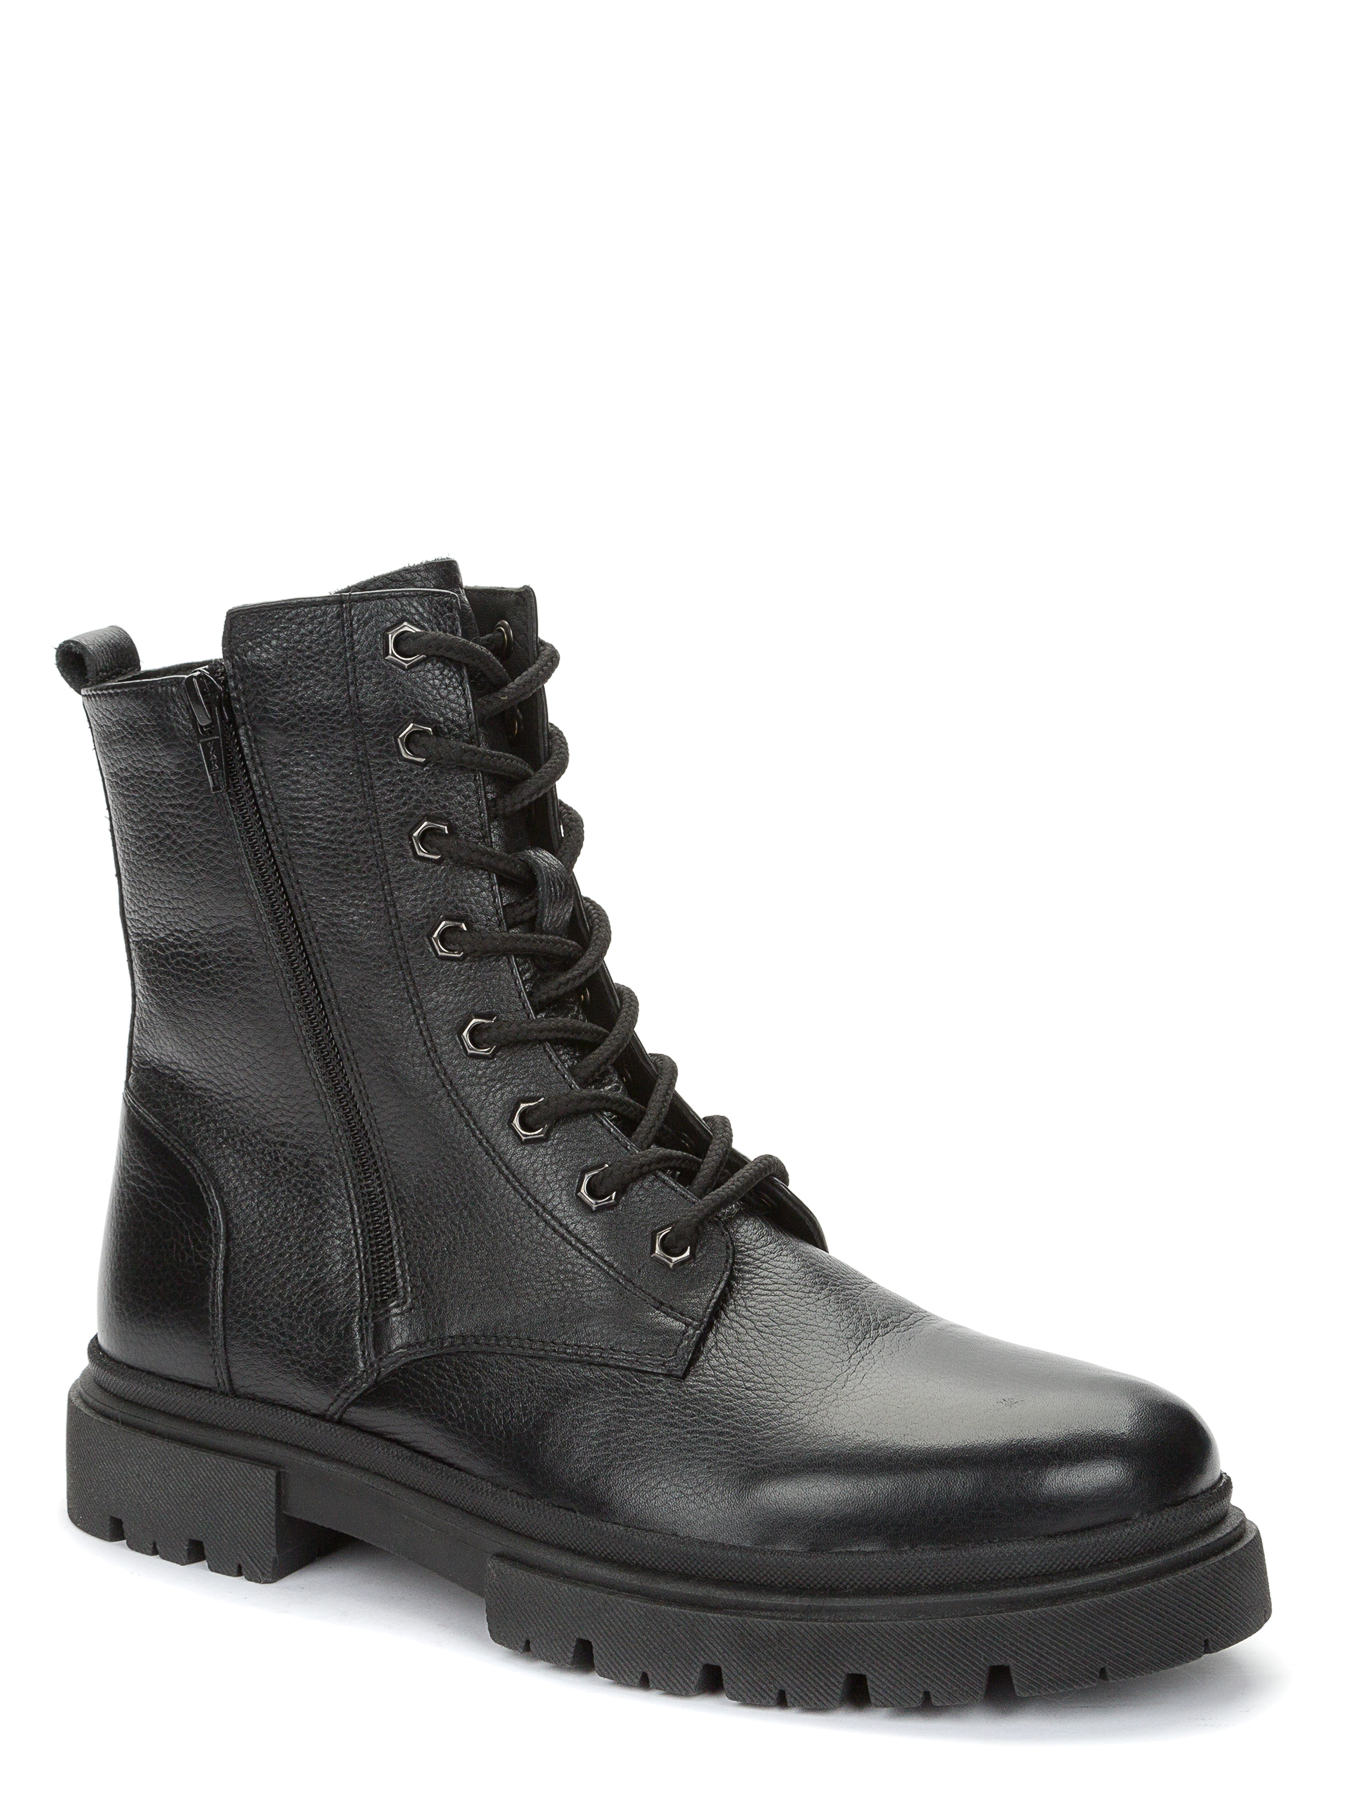 Ботинки мужские Keddo 738010-02-01 черные 43 EU